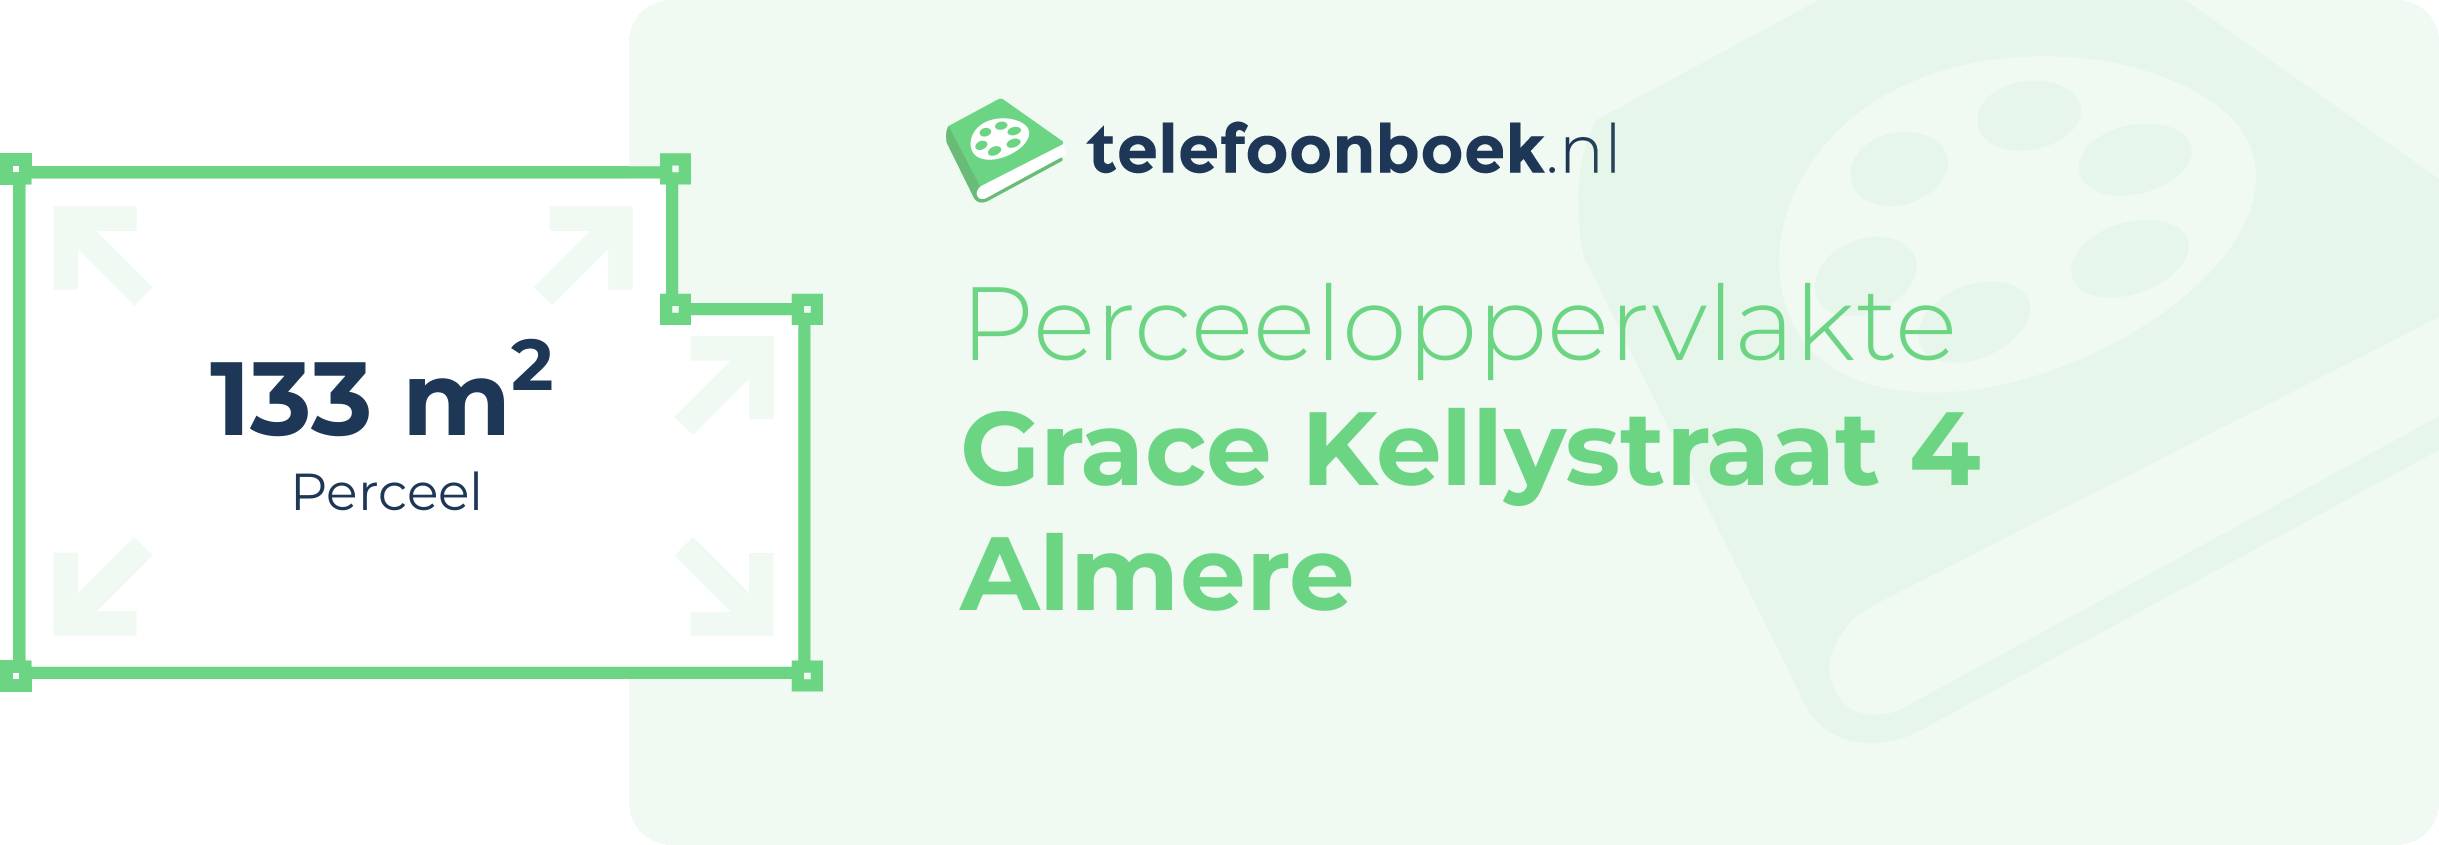 Perceeloppervlakte Grace Kellystraat 4 Almere